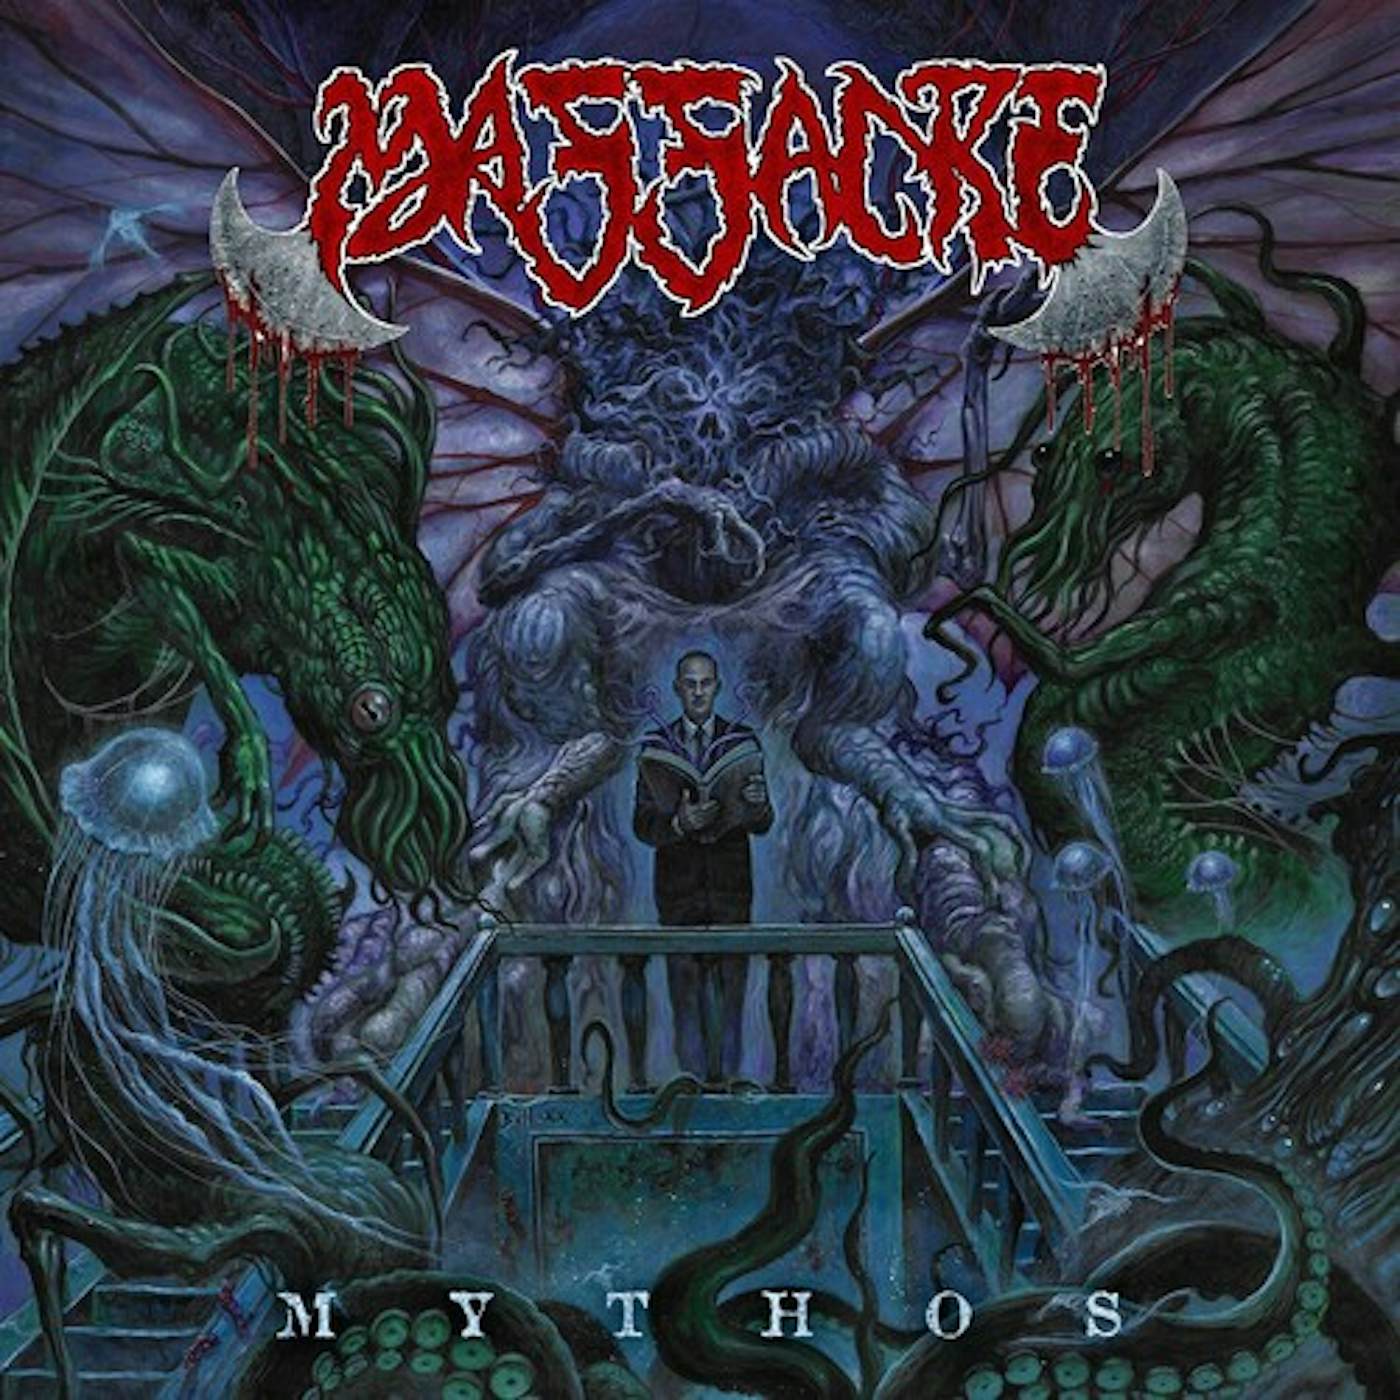 Massacre MYTHOS CD